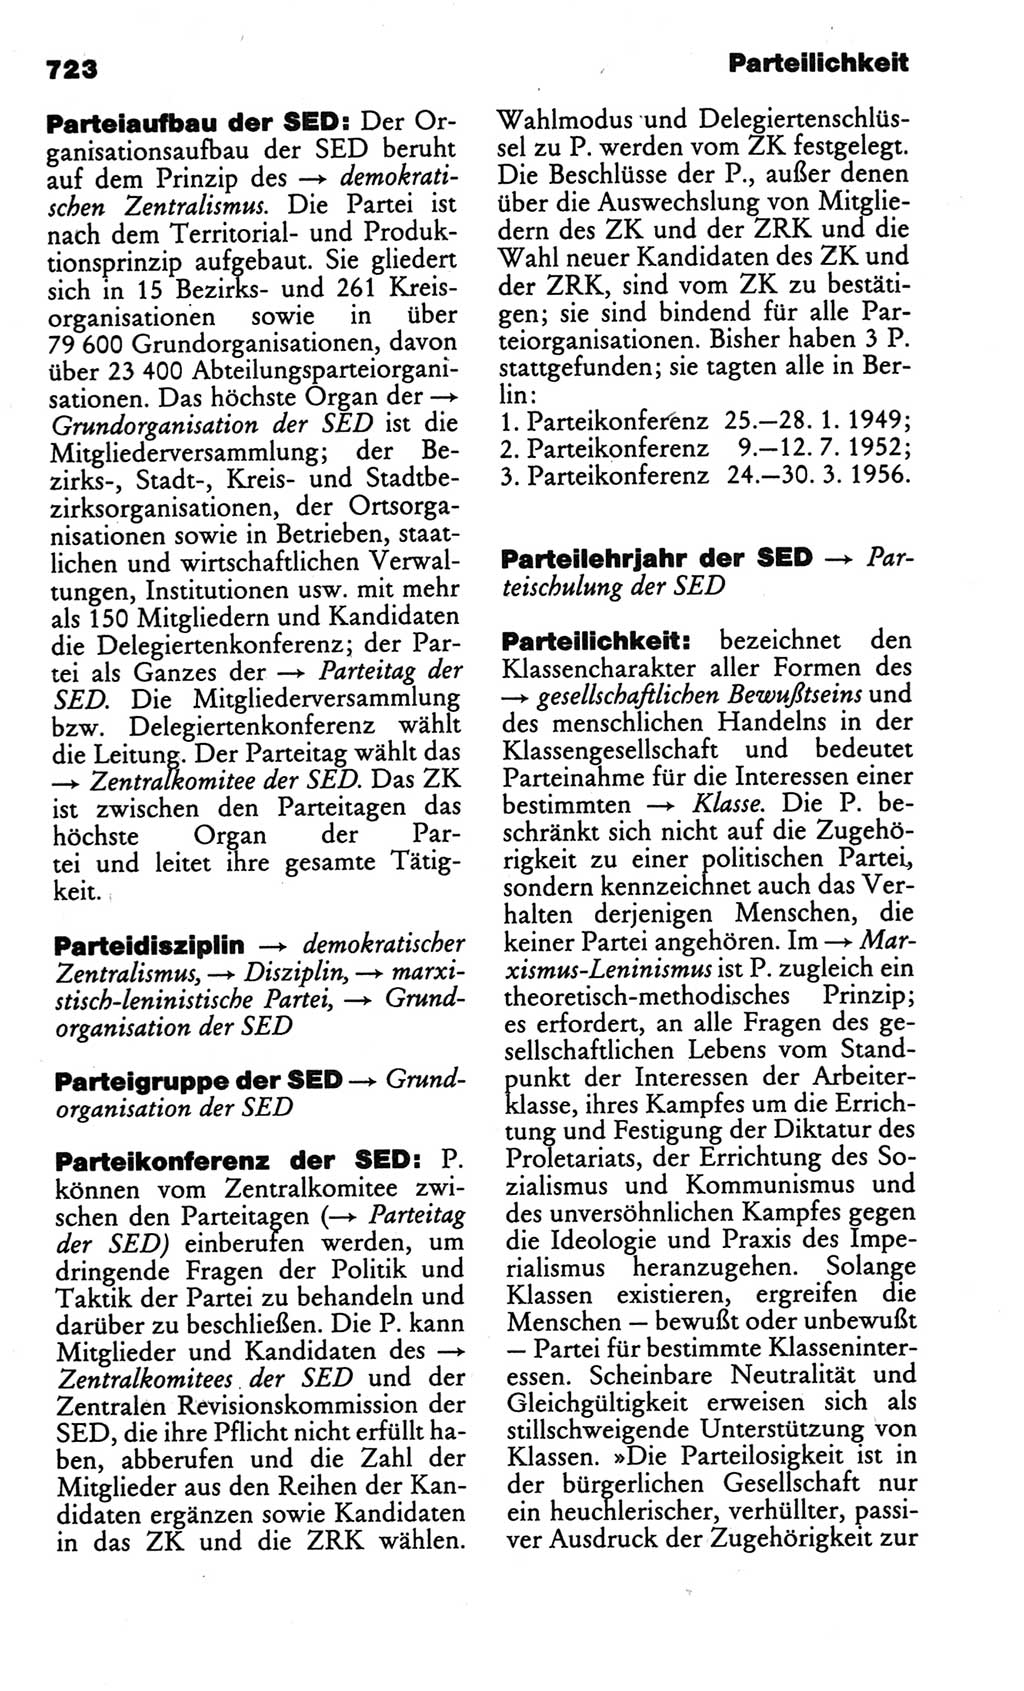 Kleines politisches Wörterbuch [Deutsche Demokratische Republik (DDR)] 1986, Seite 723 (Kl. pol. Wb. DDR 1986, S. 723)